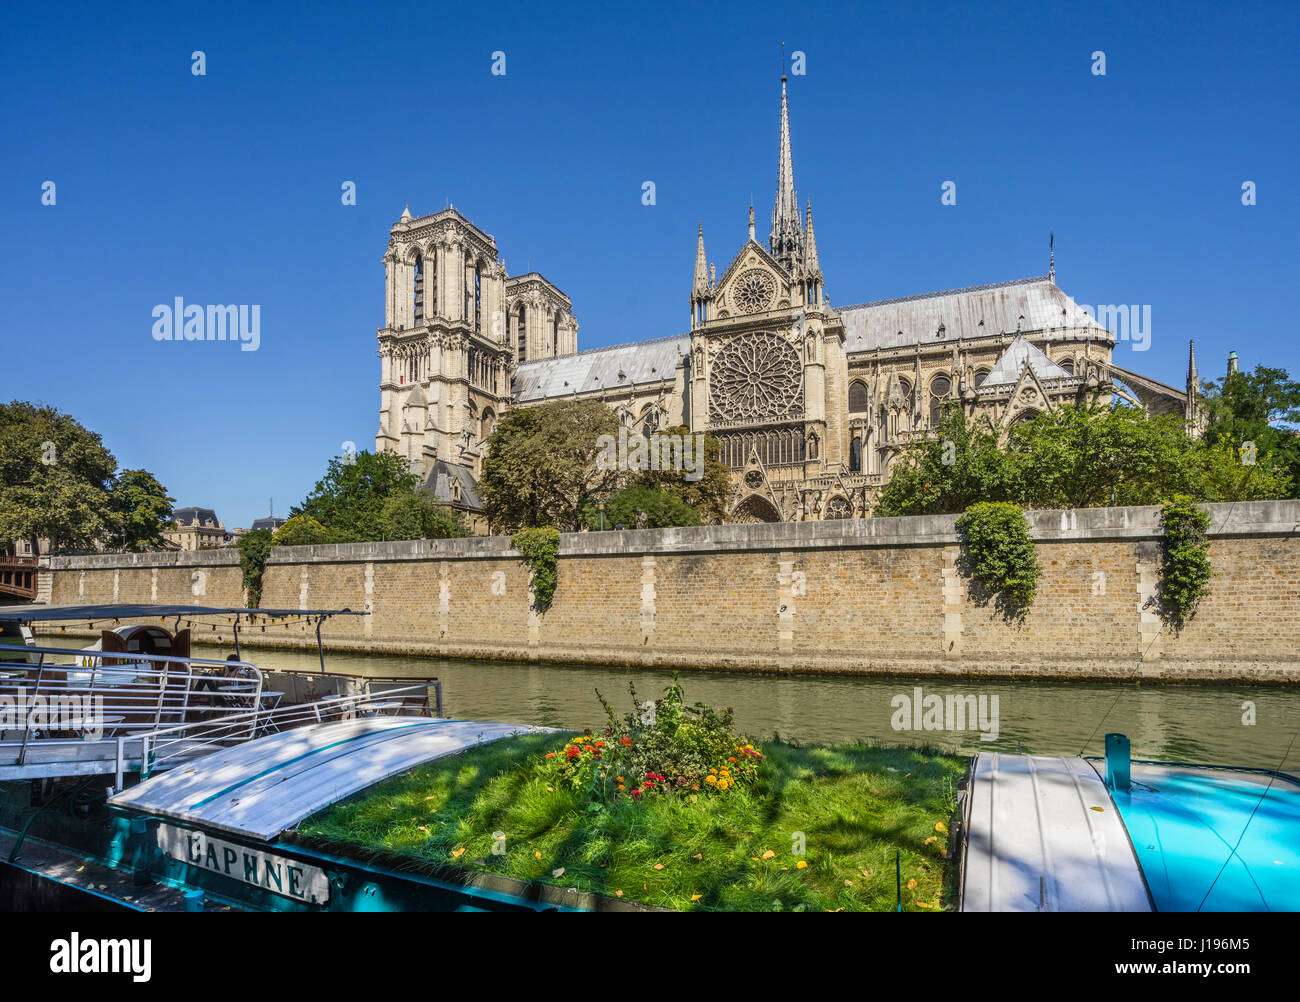 France, Paris, Seine, Ile de la Cite, vue de la Cathédrale Notre-Dame, l'un des plus beaux exemples de l'architecture gothique française Banque D'Images